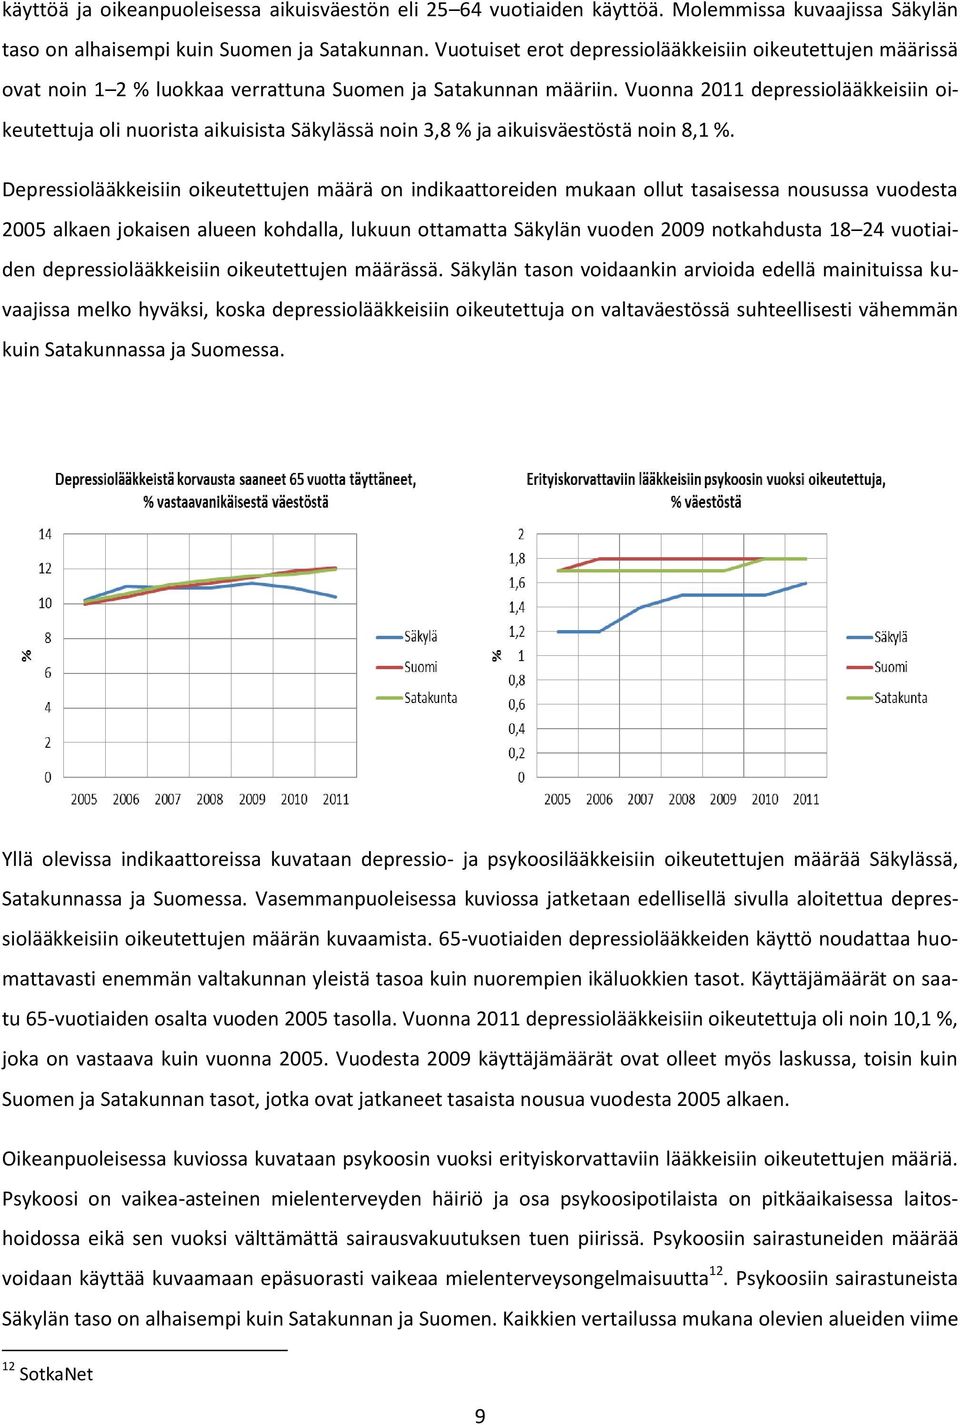 Vuonna 2011 depressiolääkkeisiin oikeutettuja oli nuorista aikuisista Säkylässä noin 3,8 % ja aikuisväestöstä noin 8,1 %.